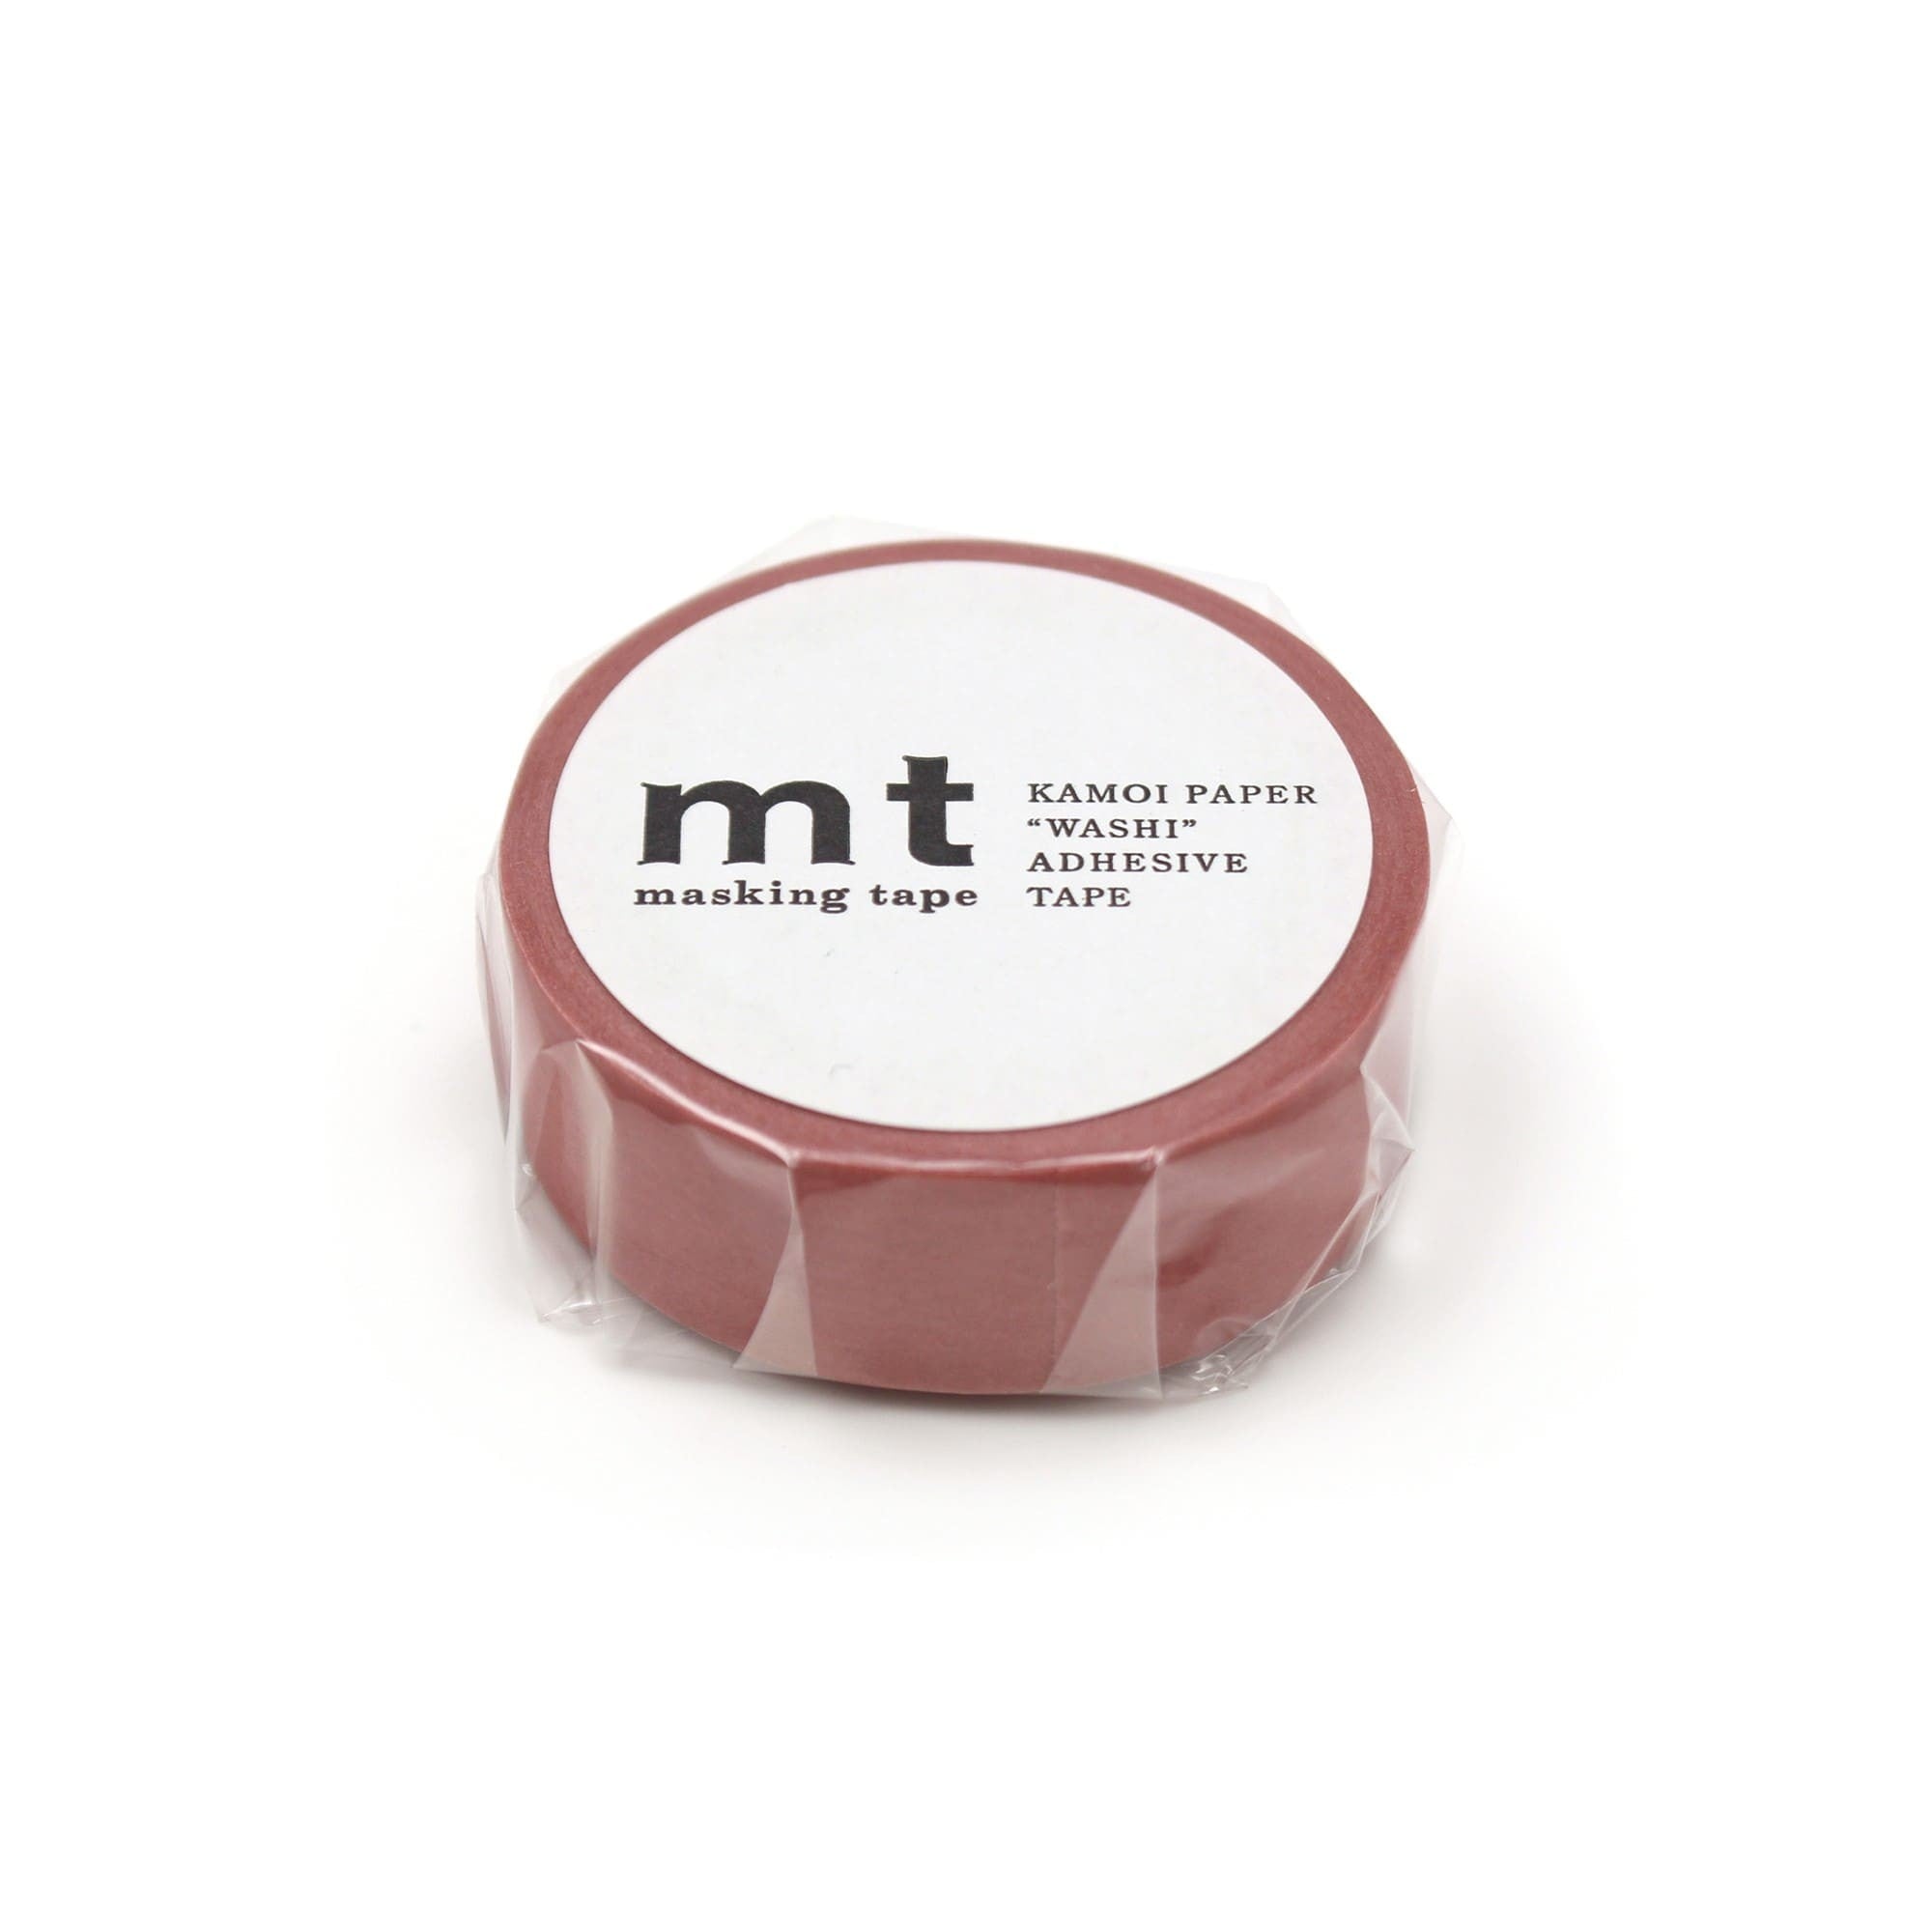 Washi Tape Matte - Smoky pink - MT masking tape - Tidformera